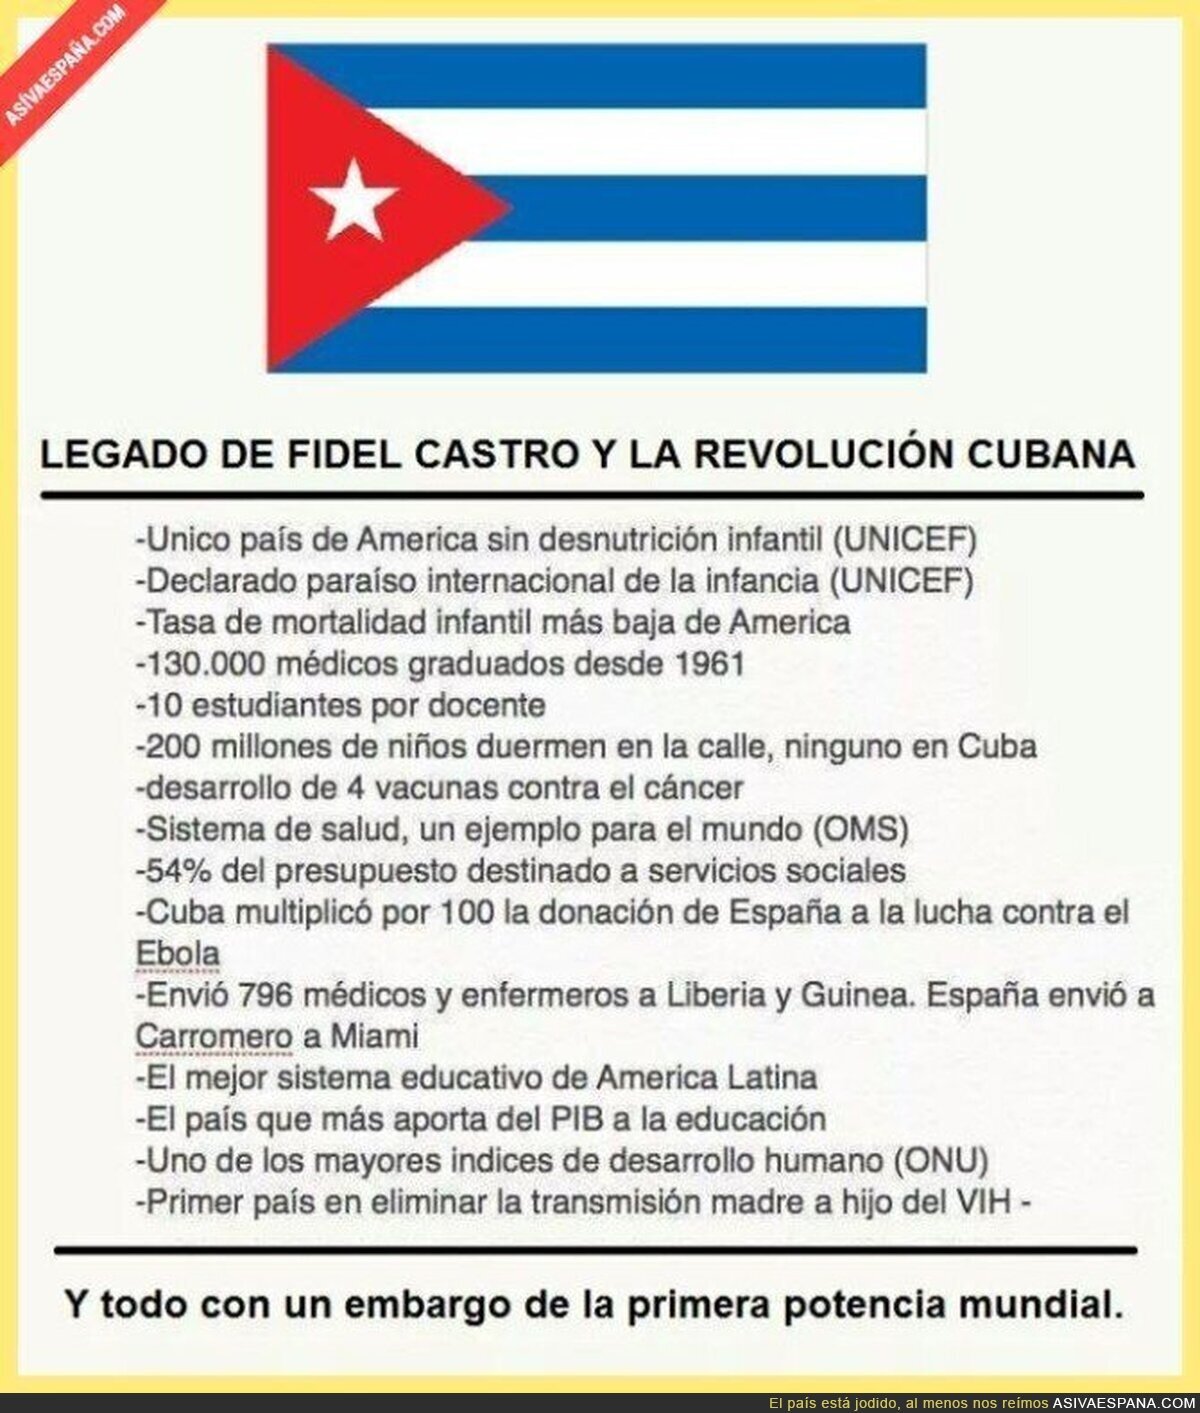 El gran legado de Fidel Castro en Cuba